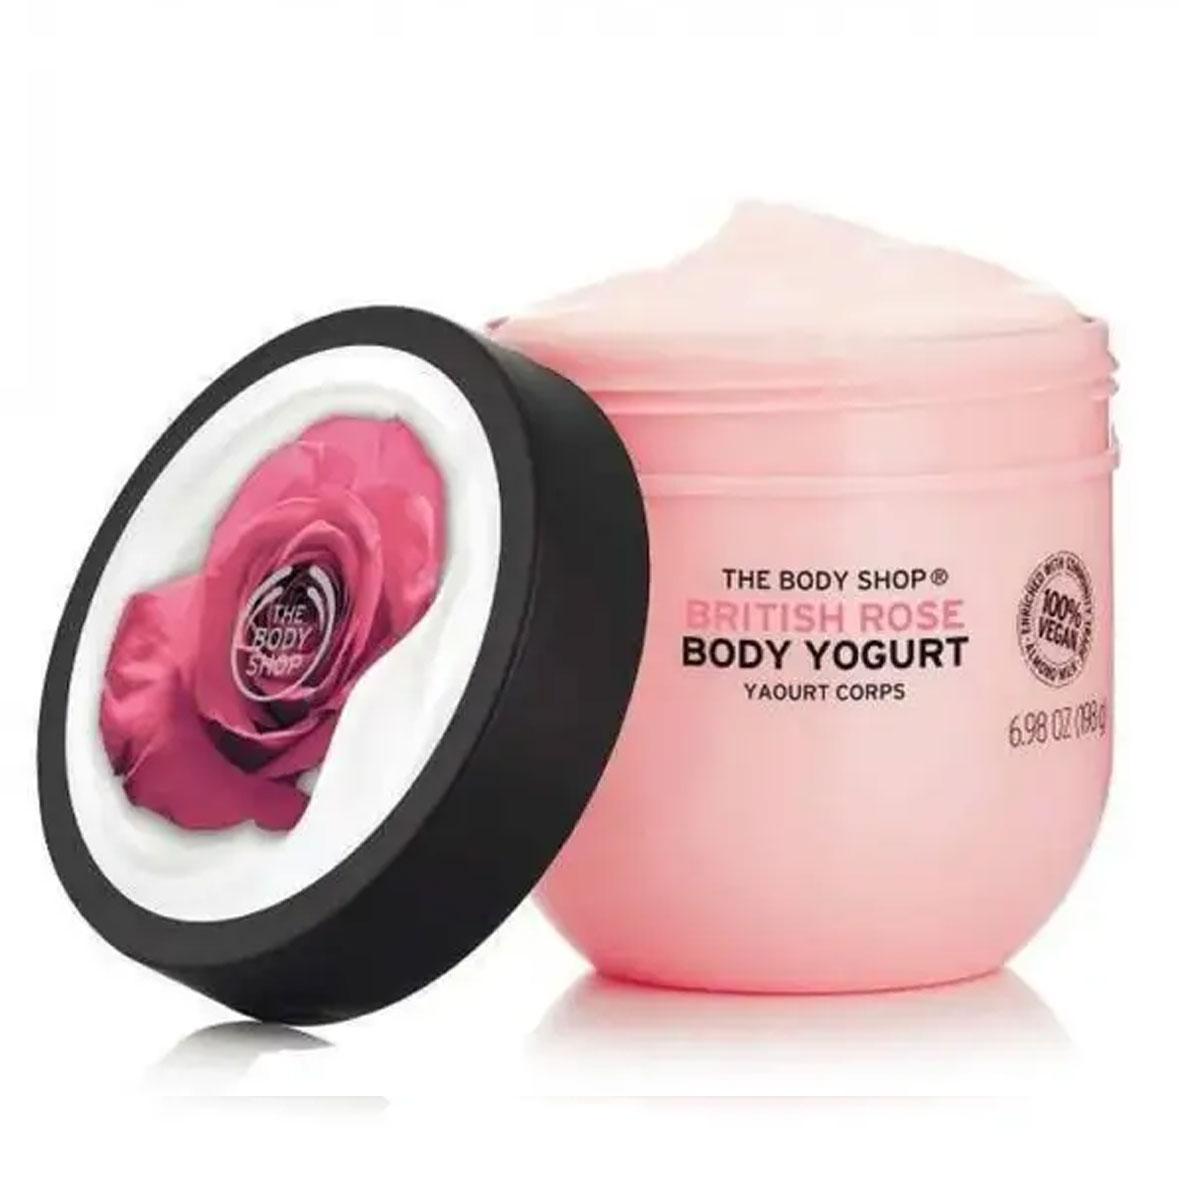 ماست بدن گل رز -  British Rose Body Yogurt